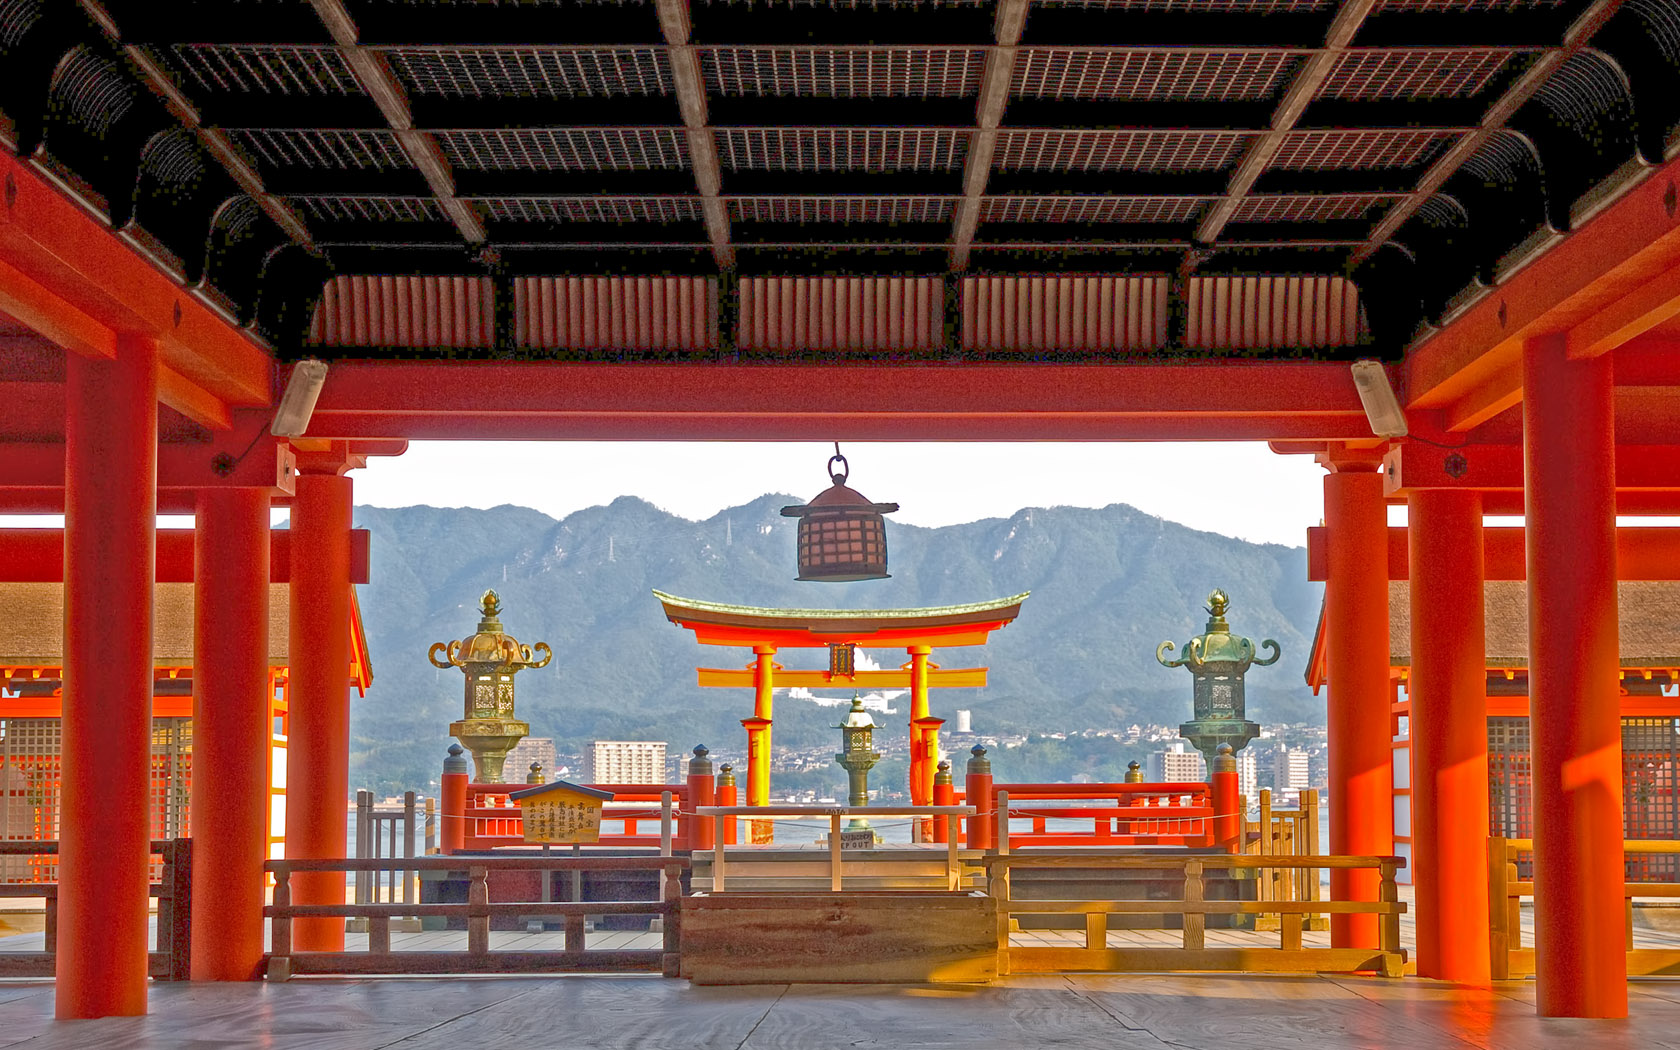 Khám phá đền Itsukushima - Địa điểm mang ý nghĩa tâm linh nổi tiếng